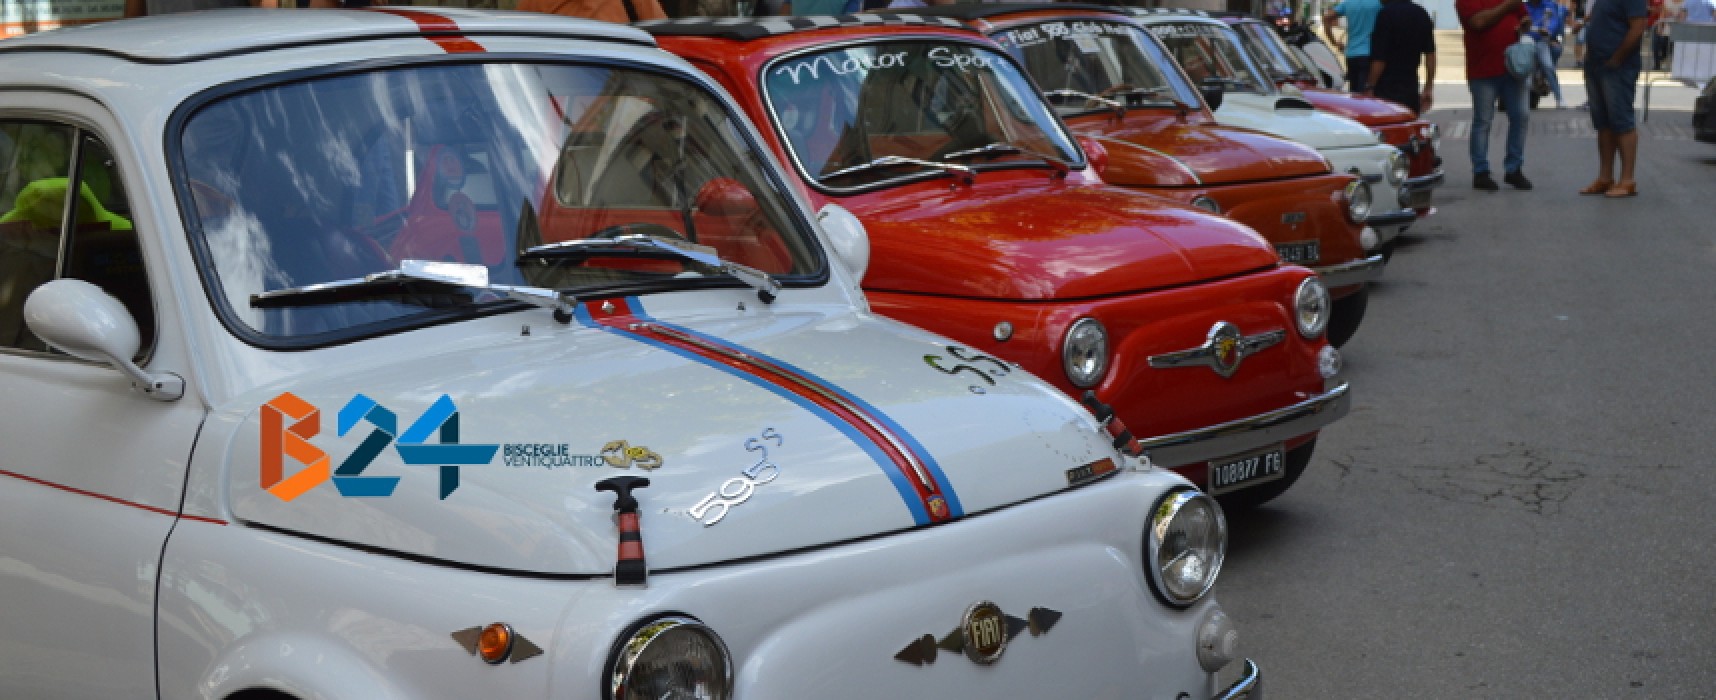 Tutti in sella e al volante: torna il raduno Fiat 500 / PROGRAMMA